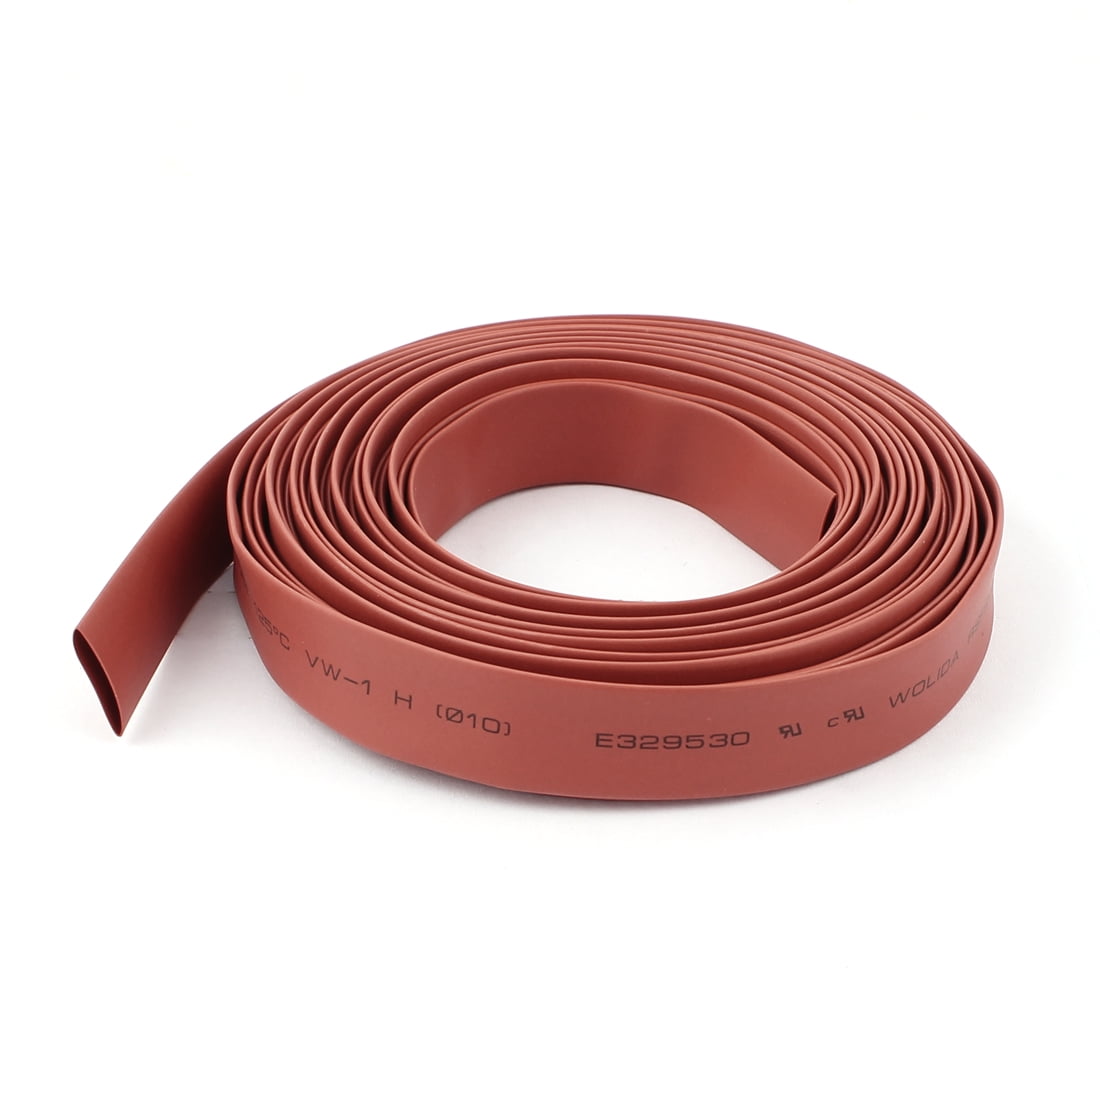 Heat Shrink Tube électrique Gaine Câble Voiture/fil Heatshrink tube Wrap